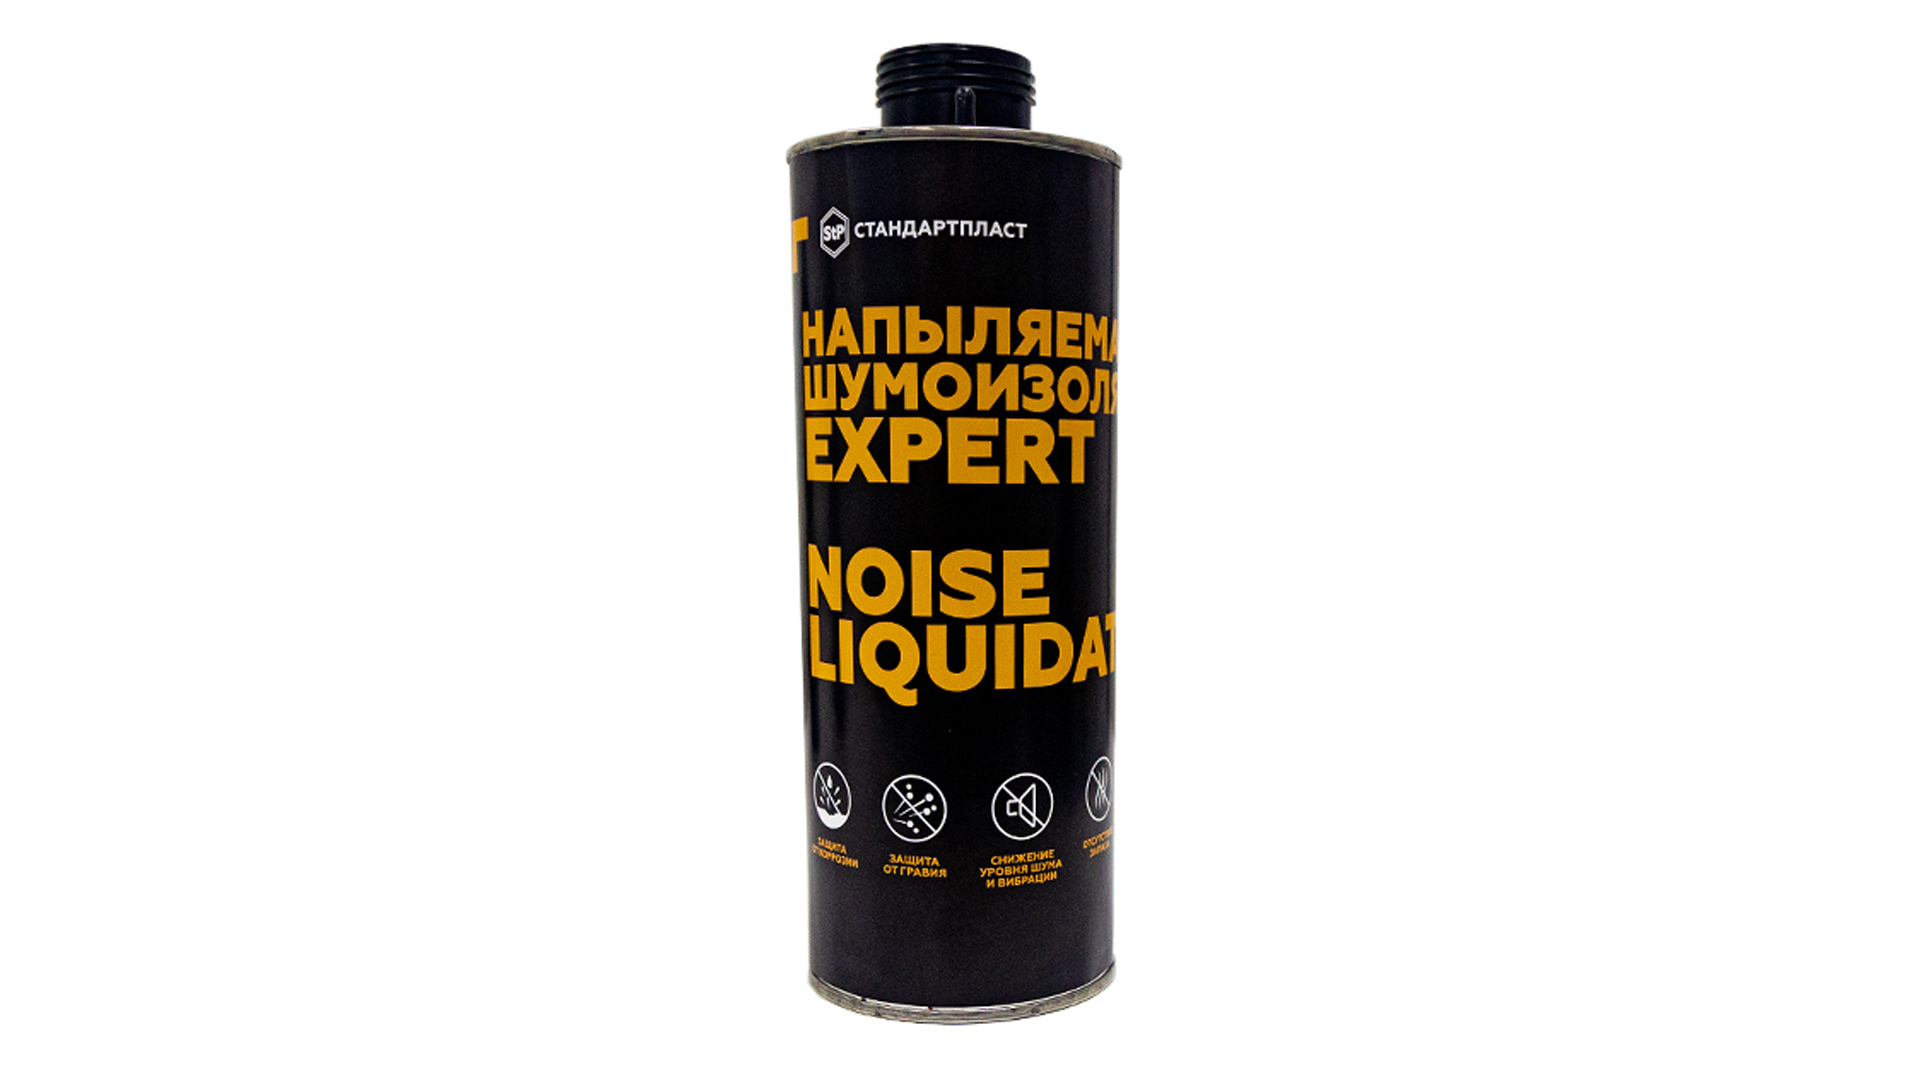 Напыляемая шумоизоляция NoiseLiquidator Expert - фото